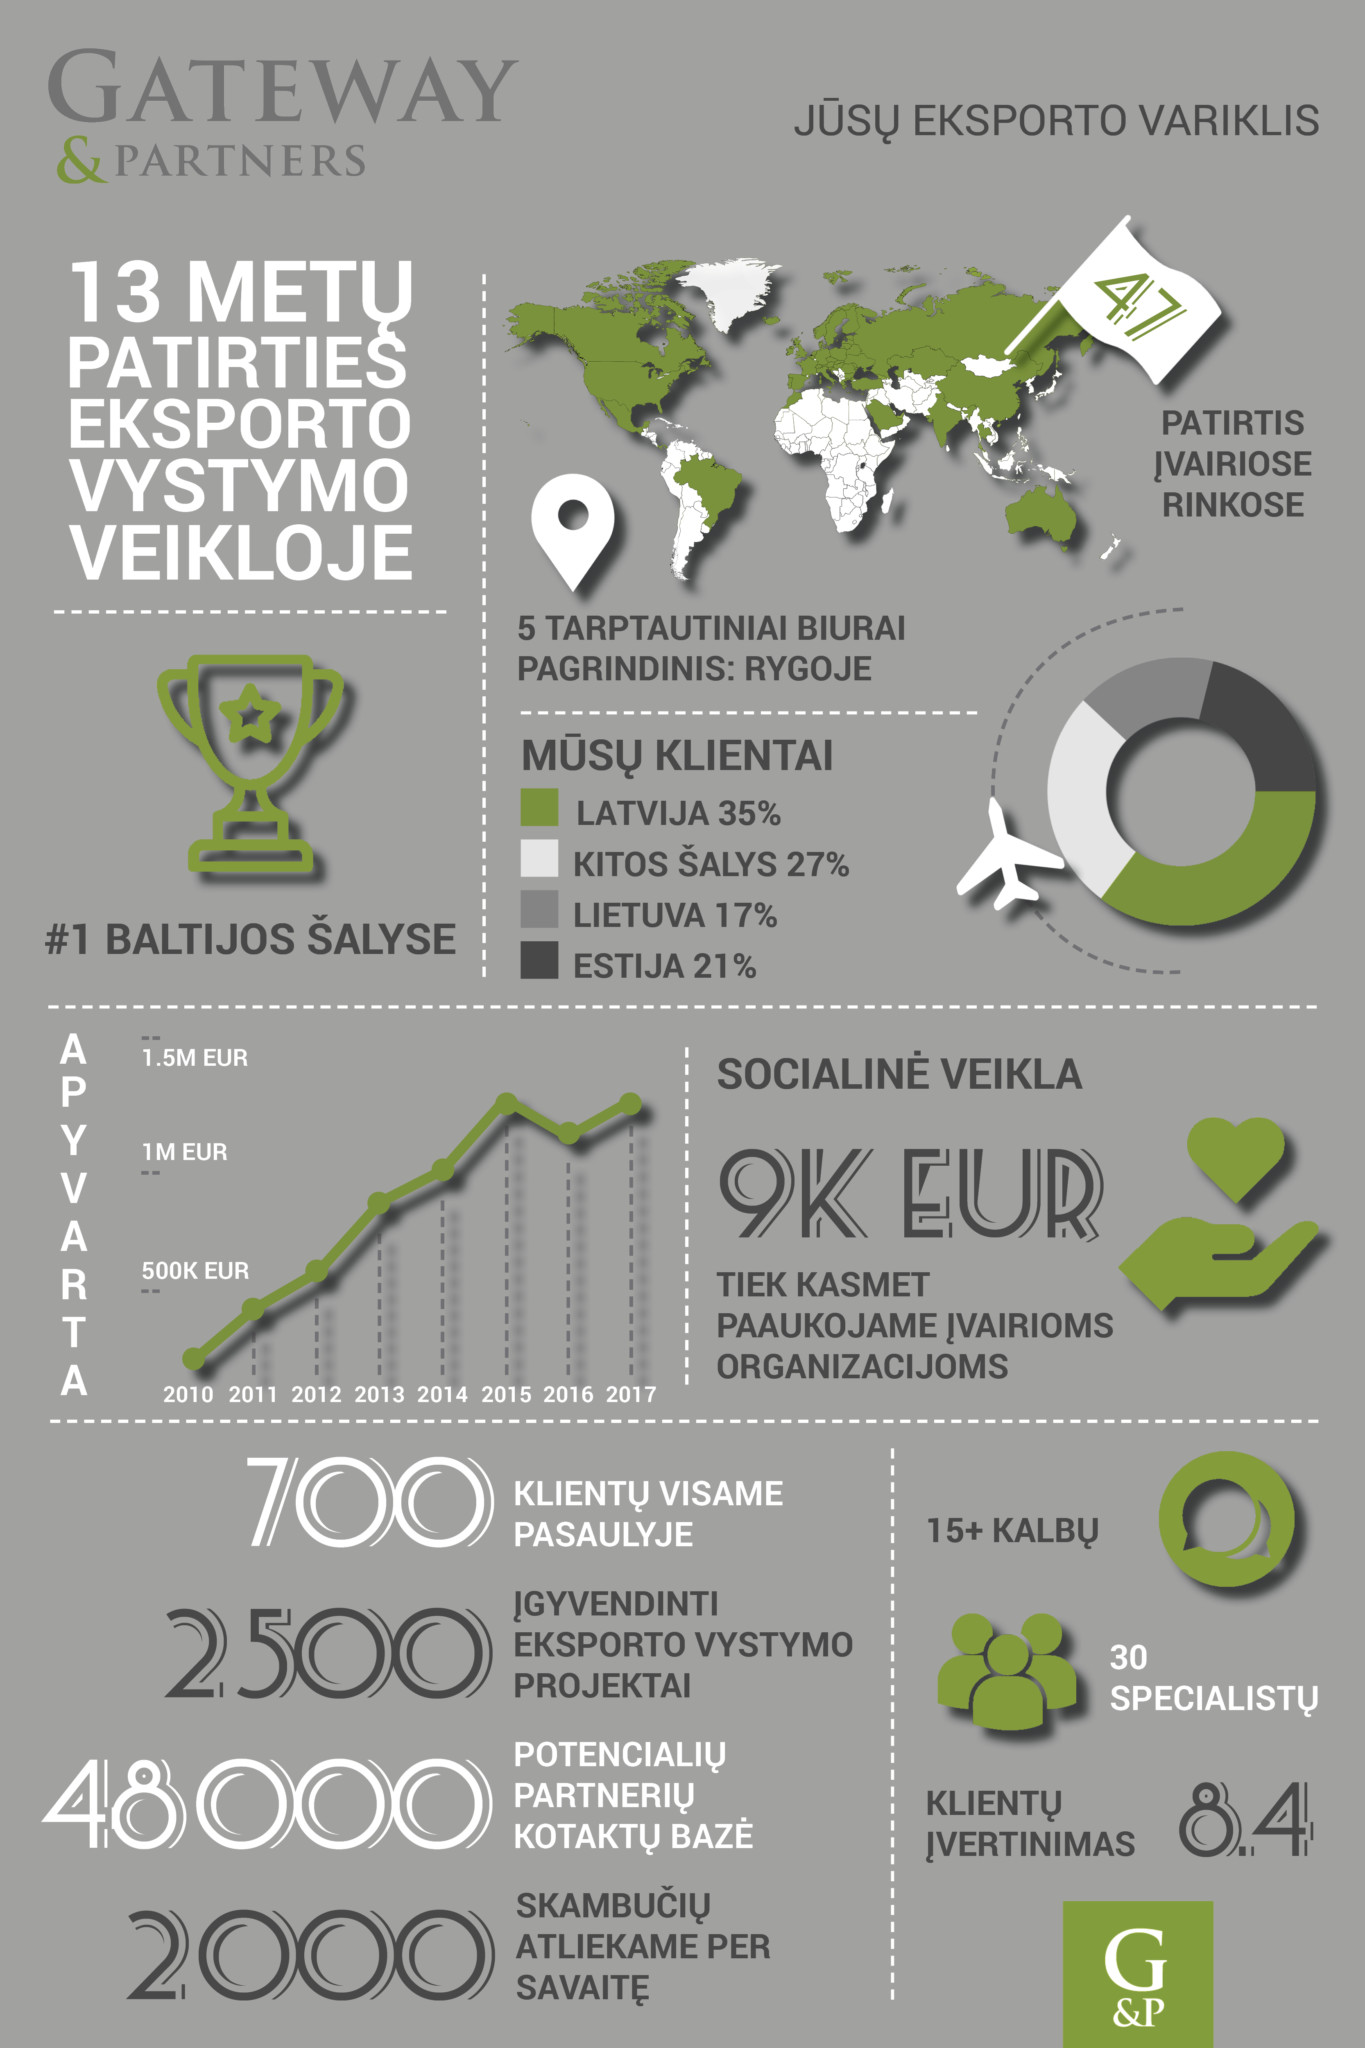 Jūsų eksporto variklis, Eksporto Partnerių Paieška, Trylika metų patirties eksporto vystymo veikloje, Tarptautiniai biurai įvairiose rinkose, Numeris vienas Baltijos šalyse